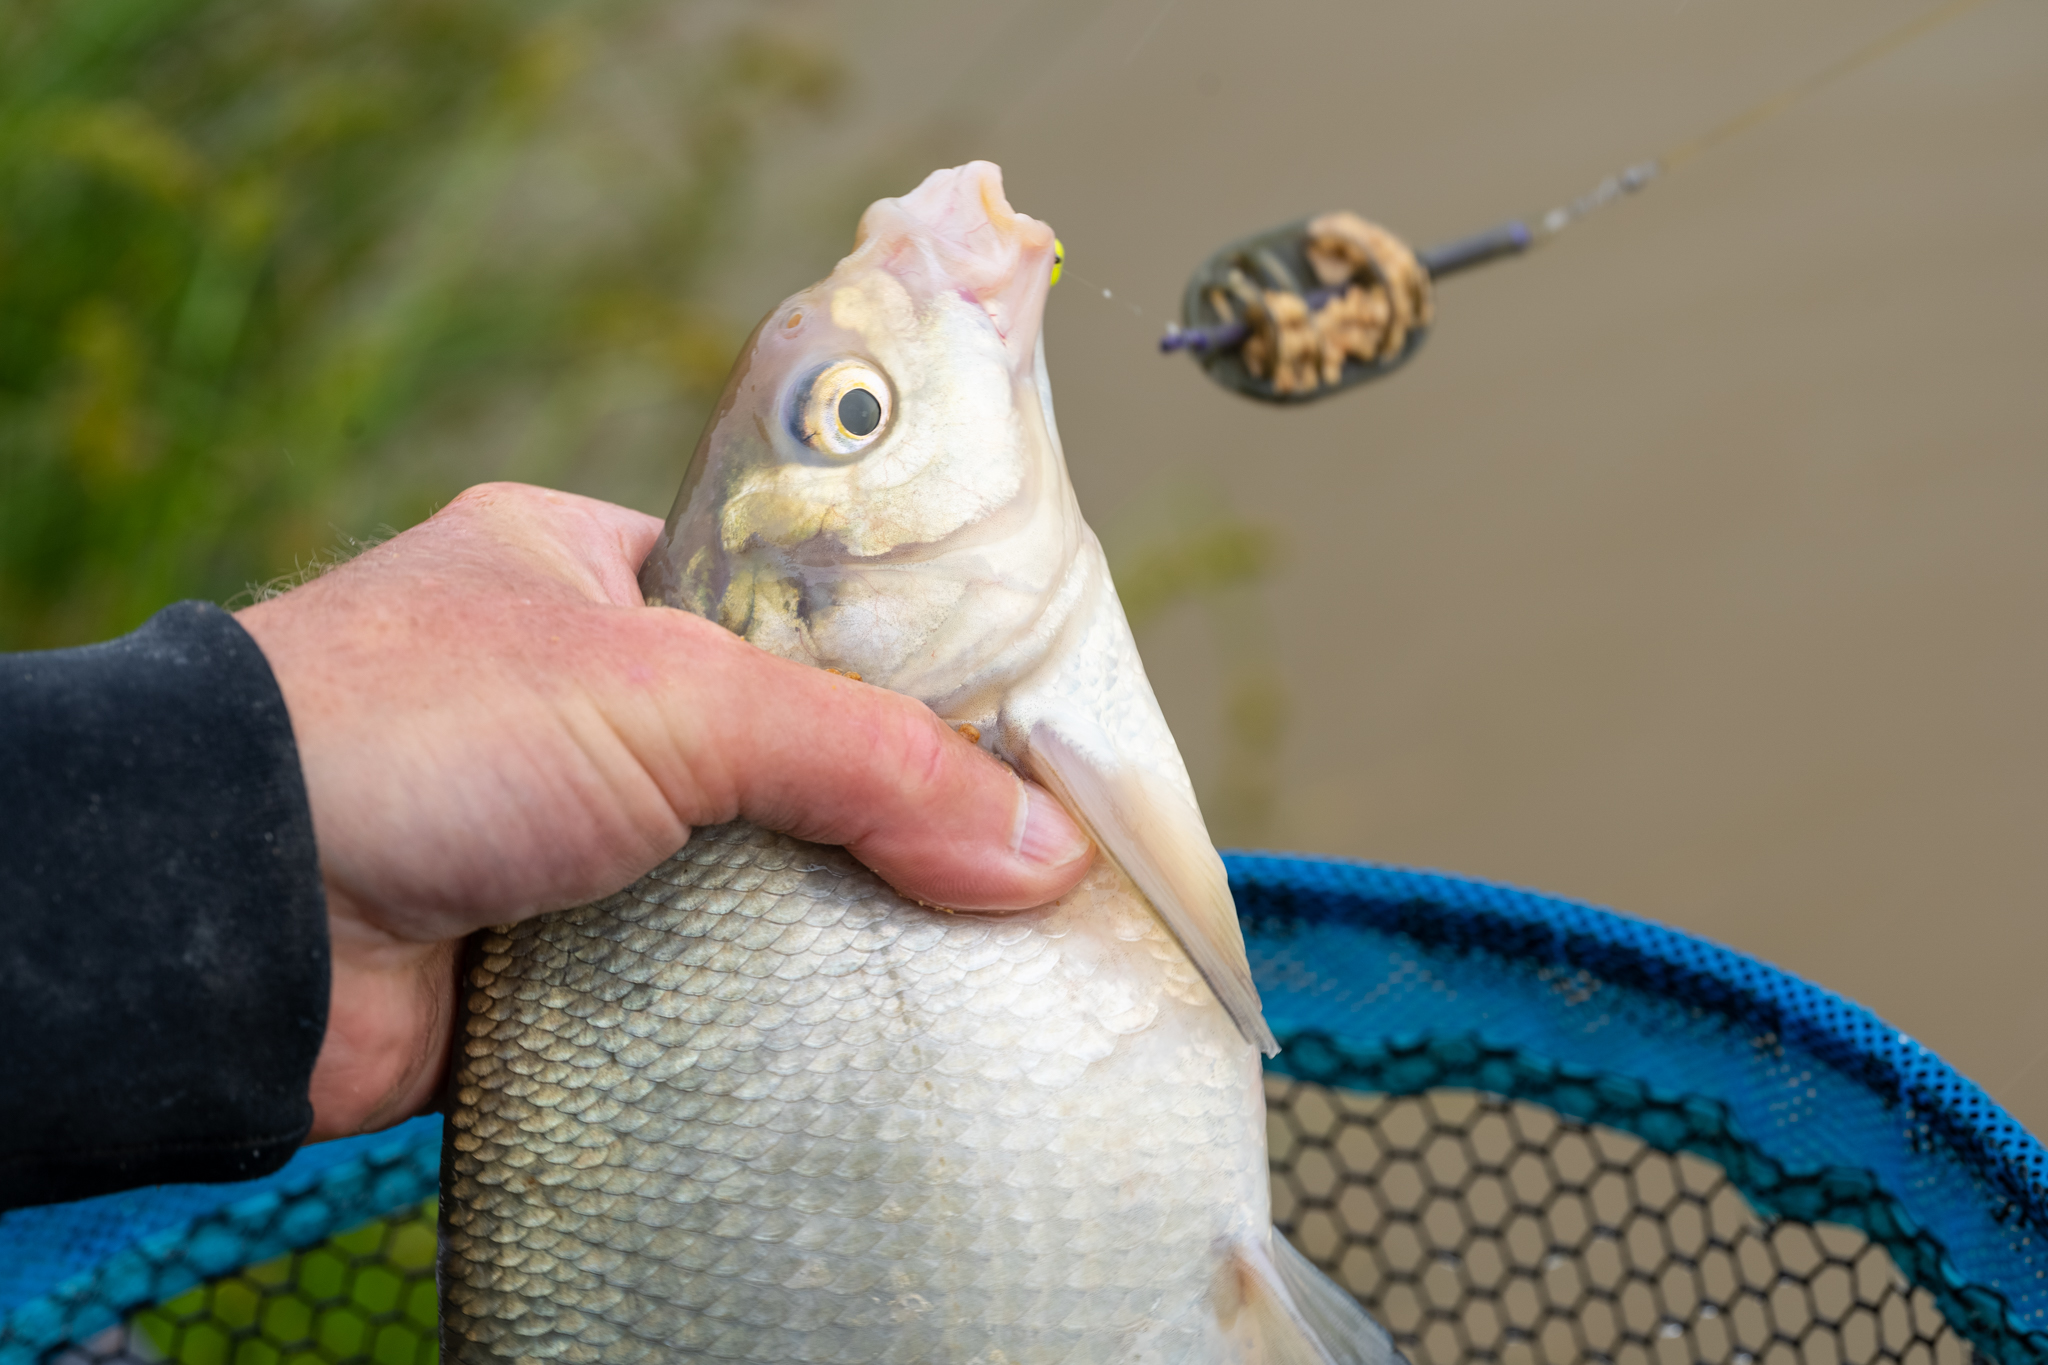 pescuitul sportiv sau recreativ